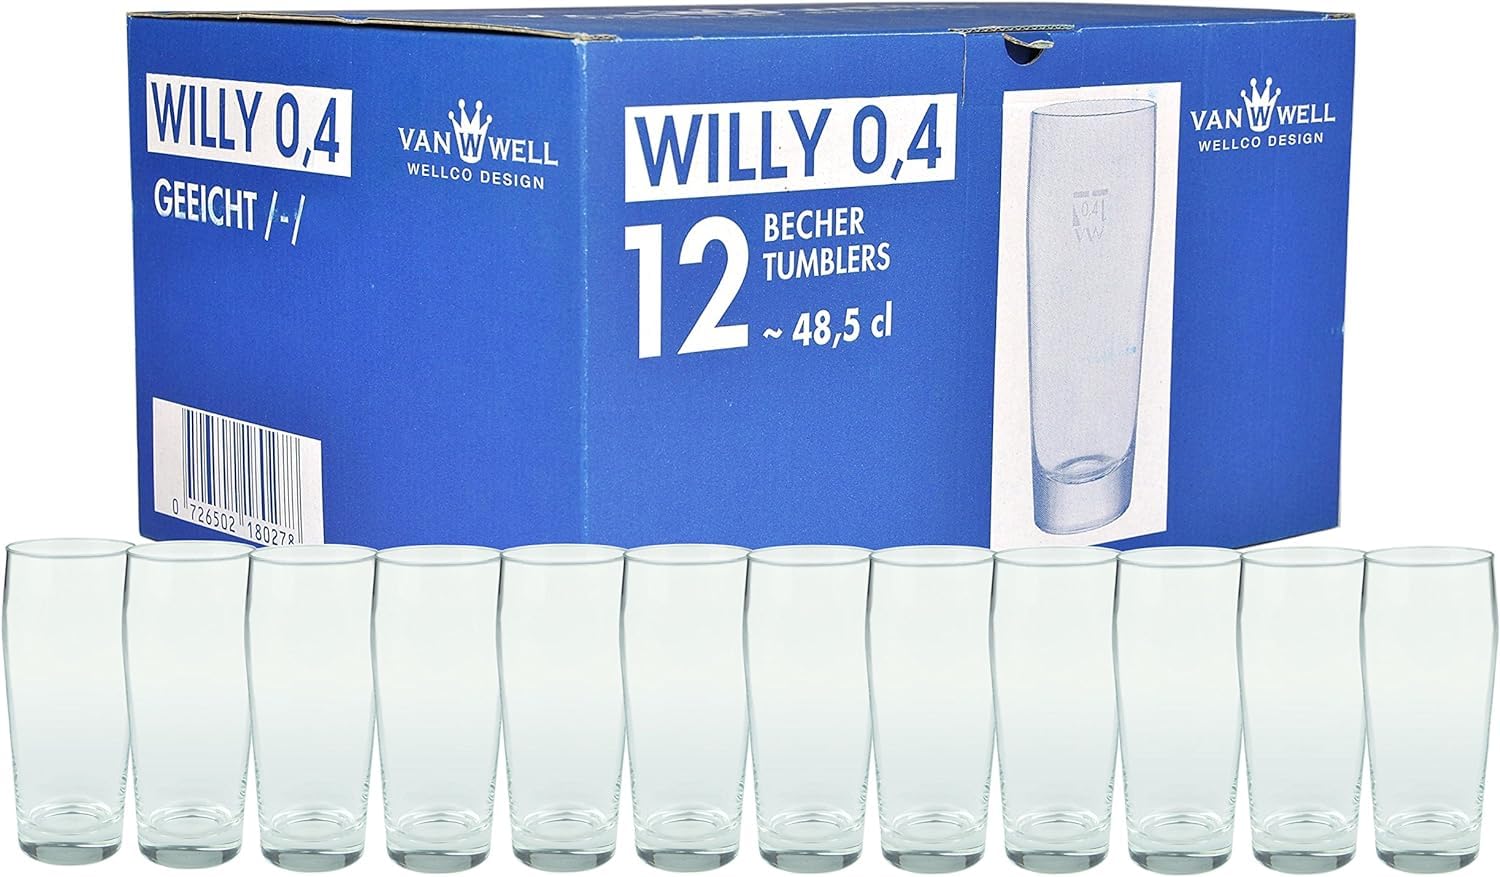 Van Well Willibecher 0,4l 12er Set - Premium Biergläser 0,4 Liter - Robustes Bierglas, Spülmaschinengeeignet, Geeicht - Pint Gläser in Gastronomiequalität - Trinkglas 400 ml für Gastronmie und Zuhause